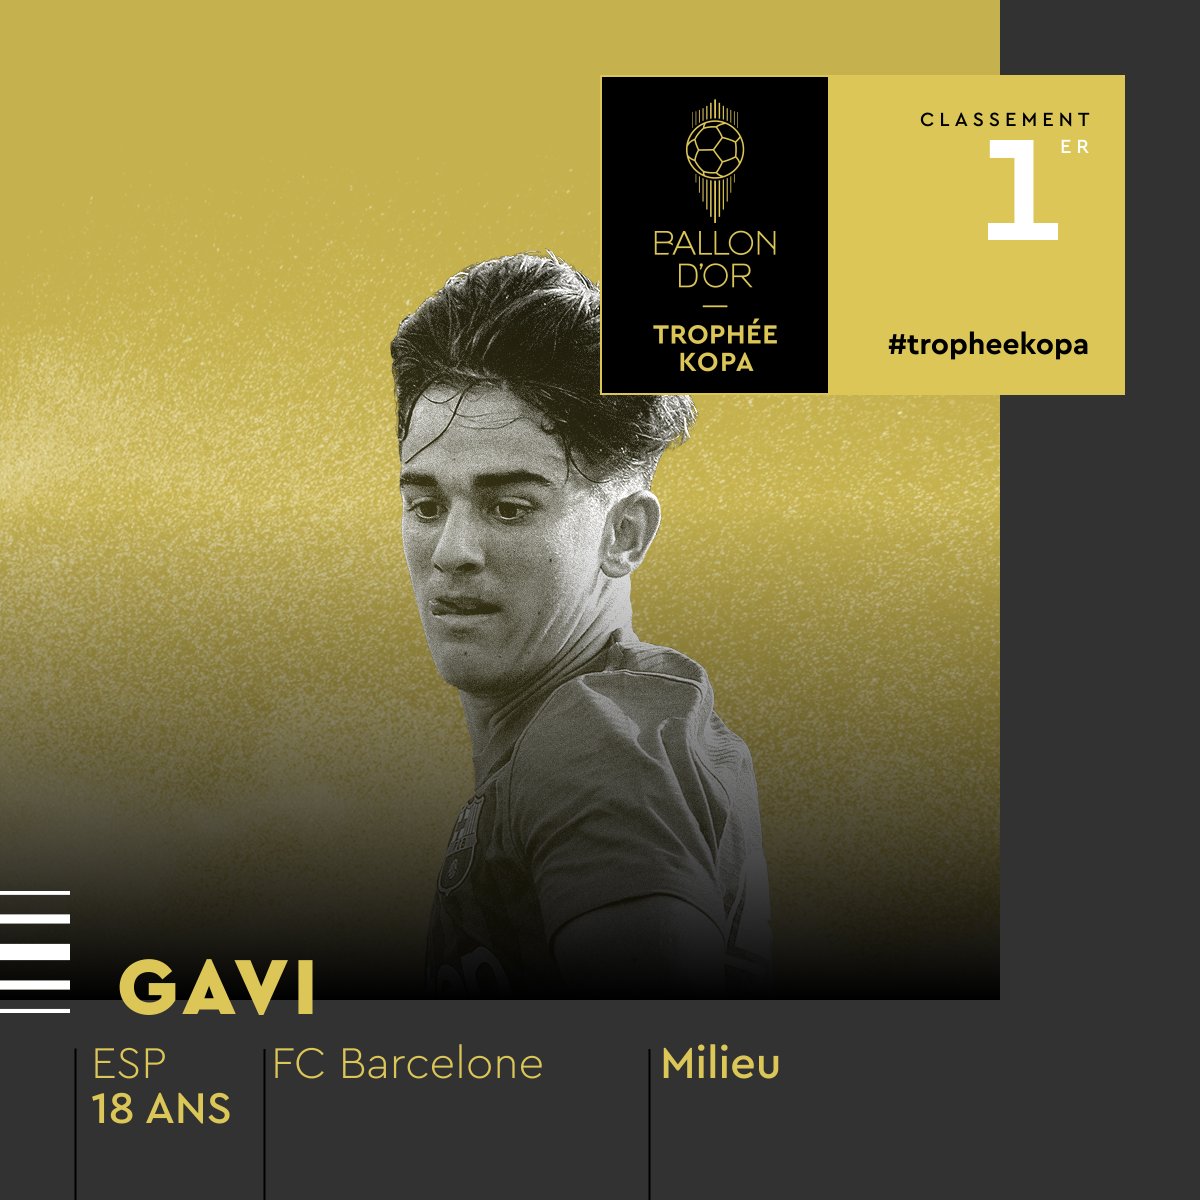 GAVI IS THE 2022 KOPA TROPHY WINNER! 

@FCBarcelona

#trophéekopa #ballondor